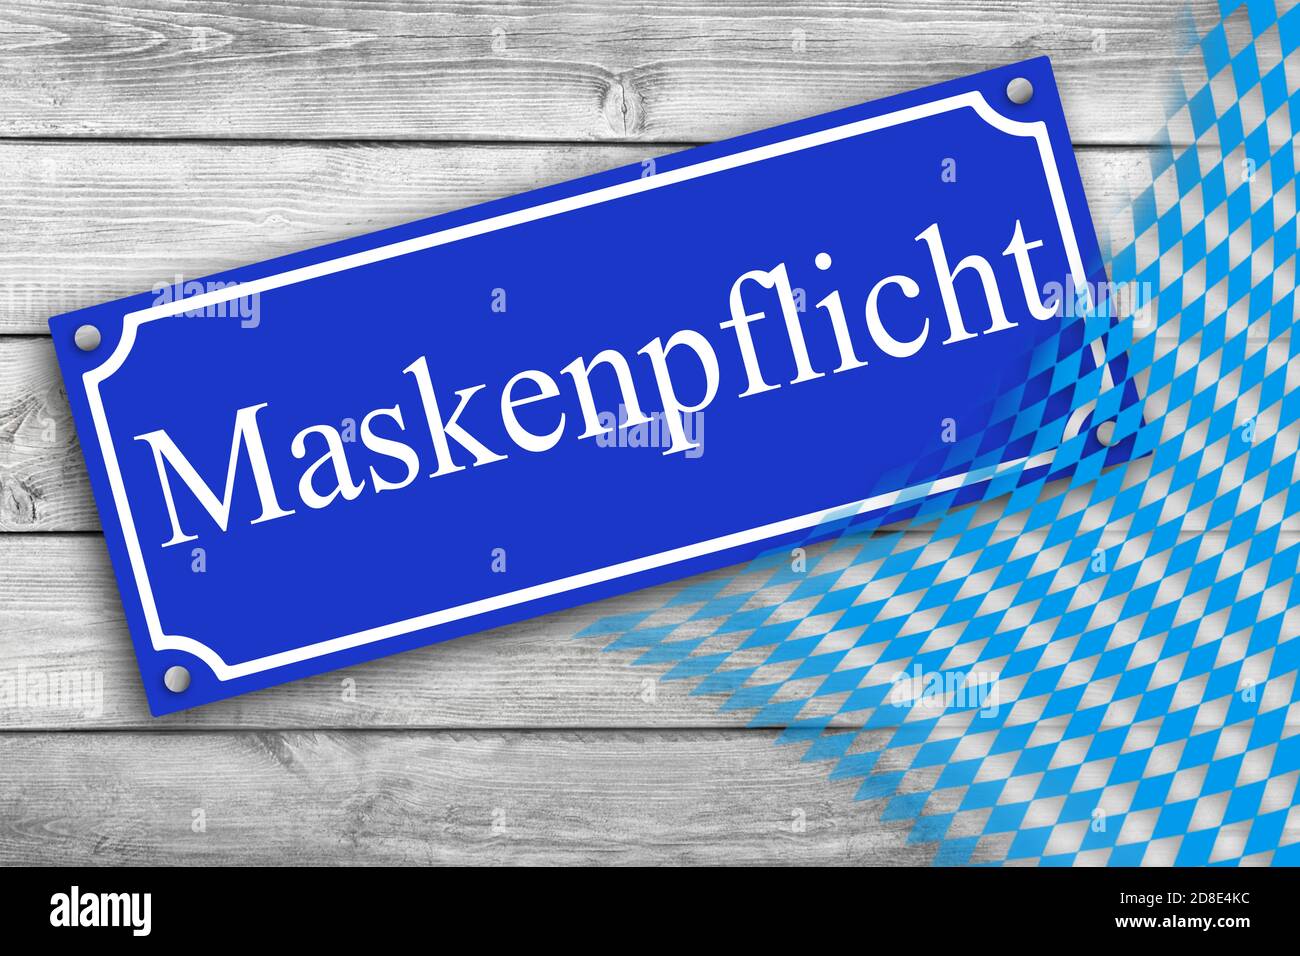 Maskenpflicht en Bayern Schim und Flagge Foto de stock